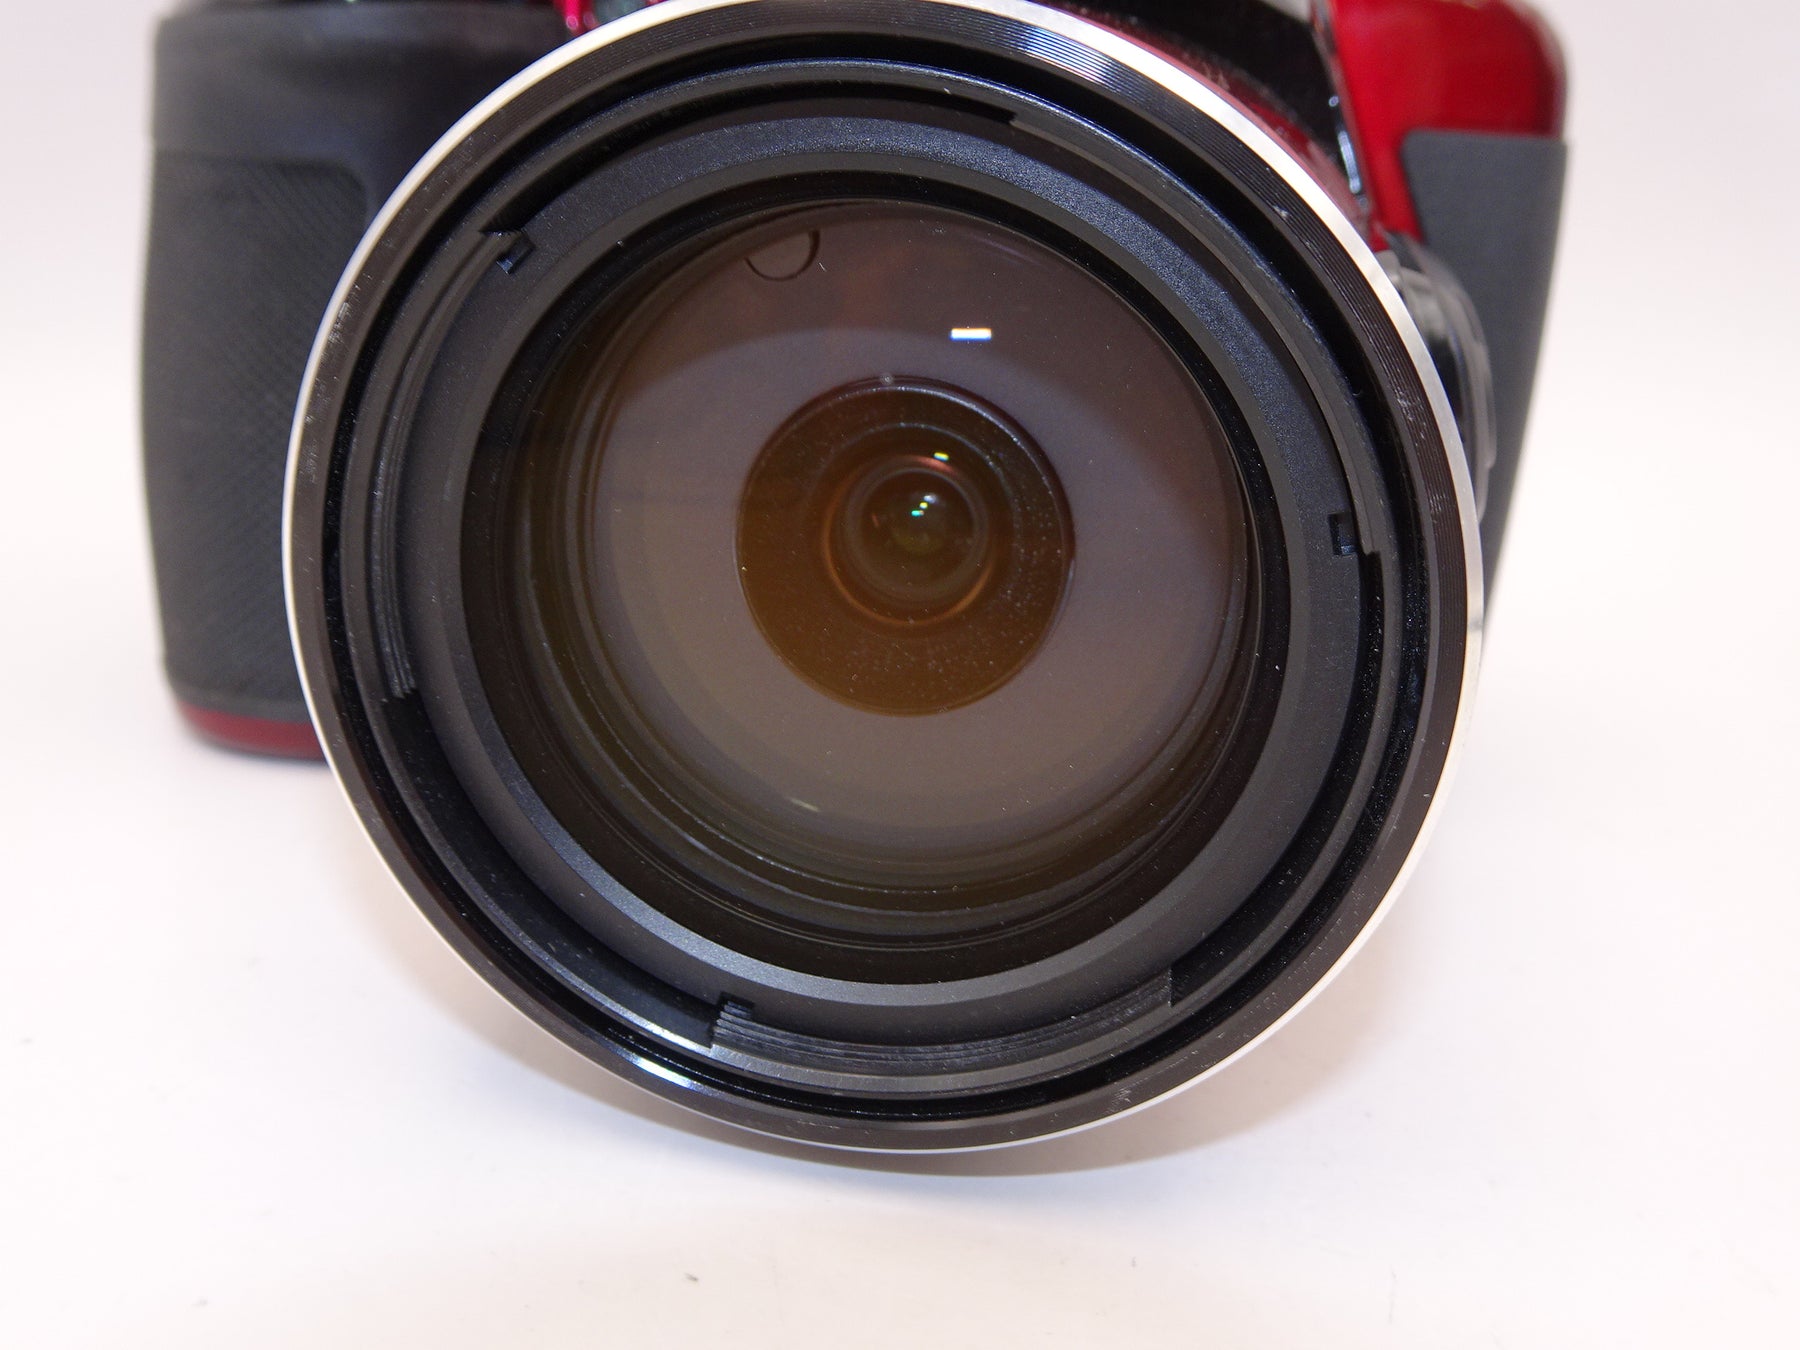 【外観特上級】Nikon デジタルカメラ COOLPIX P610 レッド P610